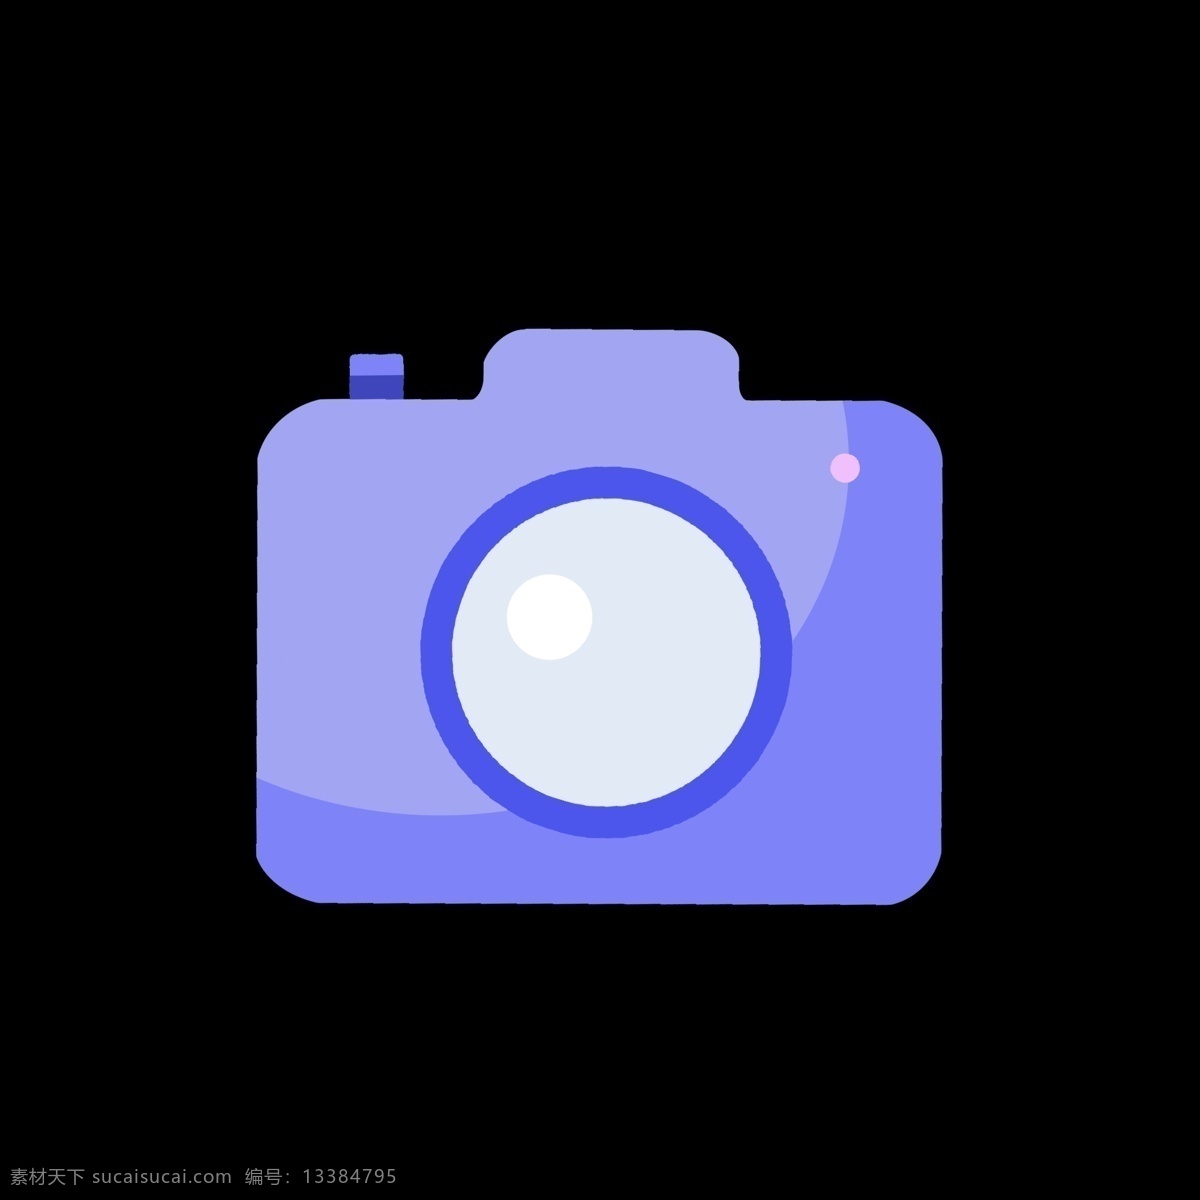 淡 蓝色 相机 样式 网页设计 淡蓝色 紫色 相机样式 网页 照相 拍照 版面设计 版本 小图标 保留 保存 照片 网页小图案